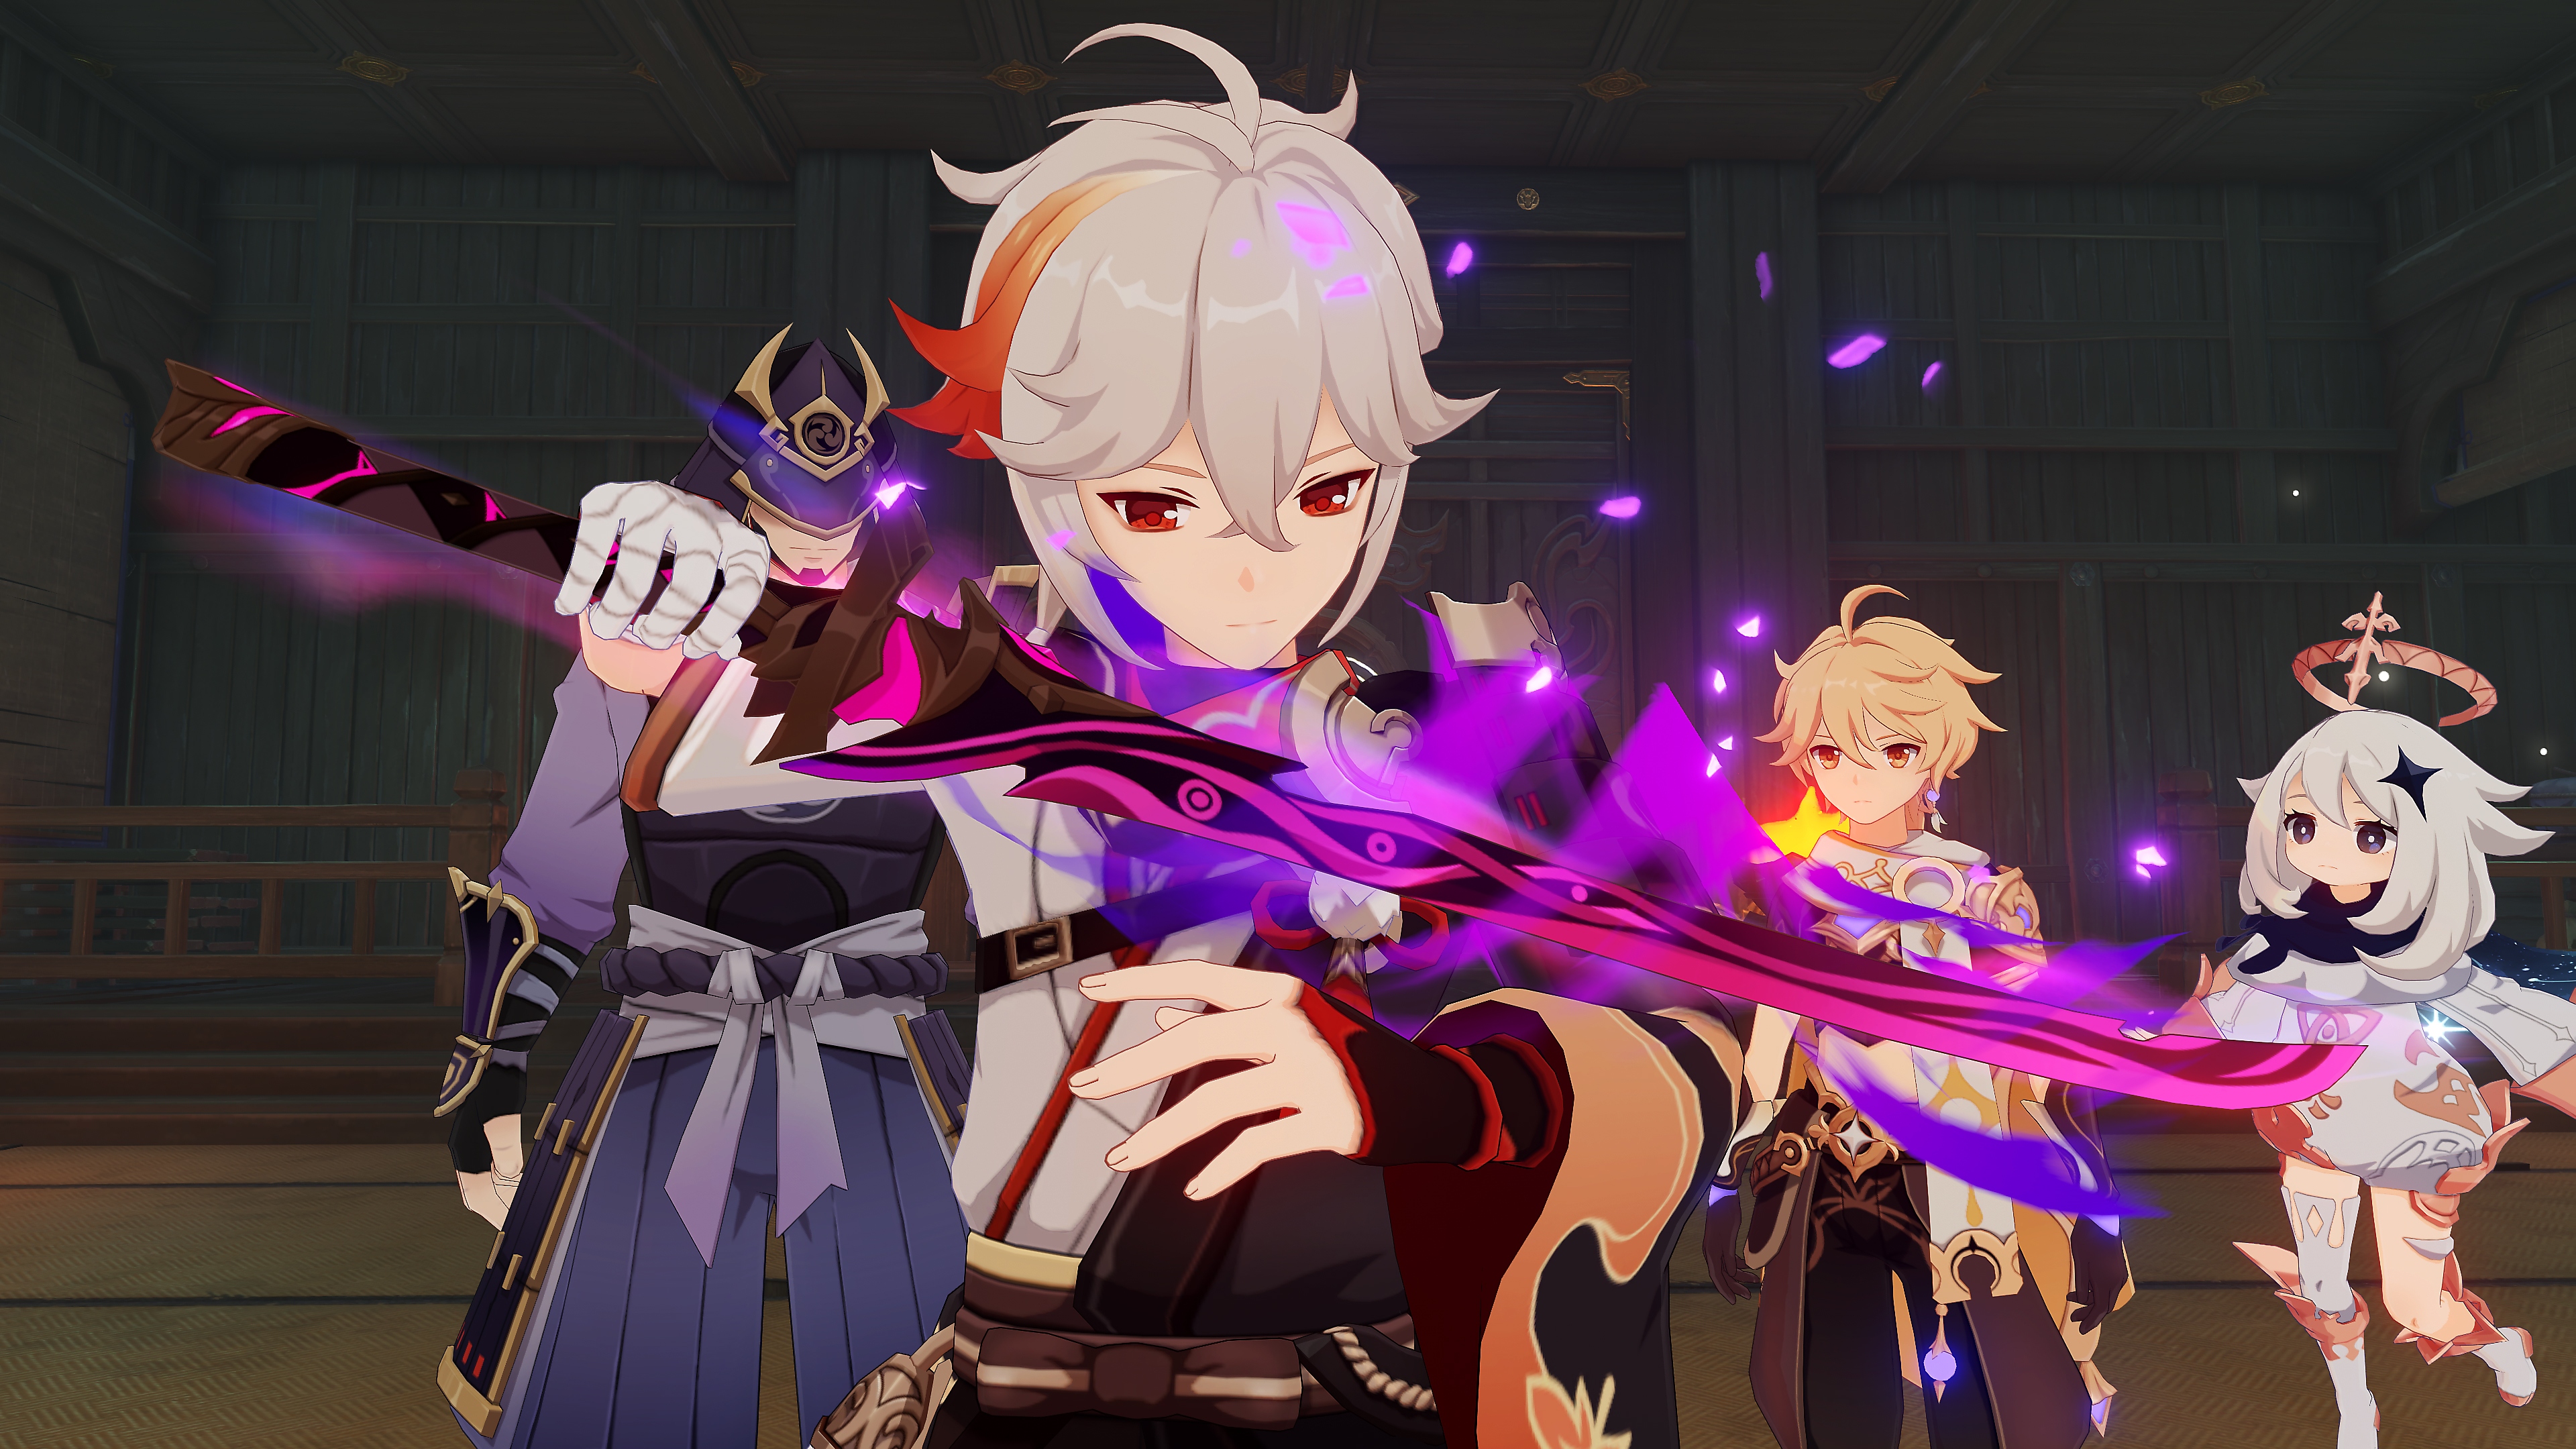 Impacto de GenShin: 2.8 Captura de pantalla de la actualización que muestra un personaje con una espada púrpura brillante